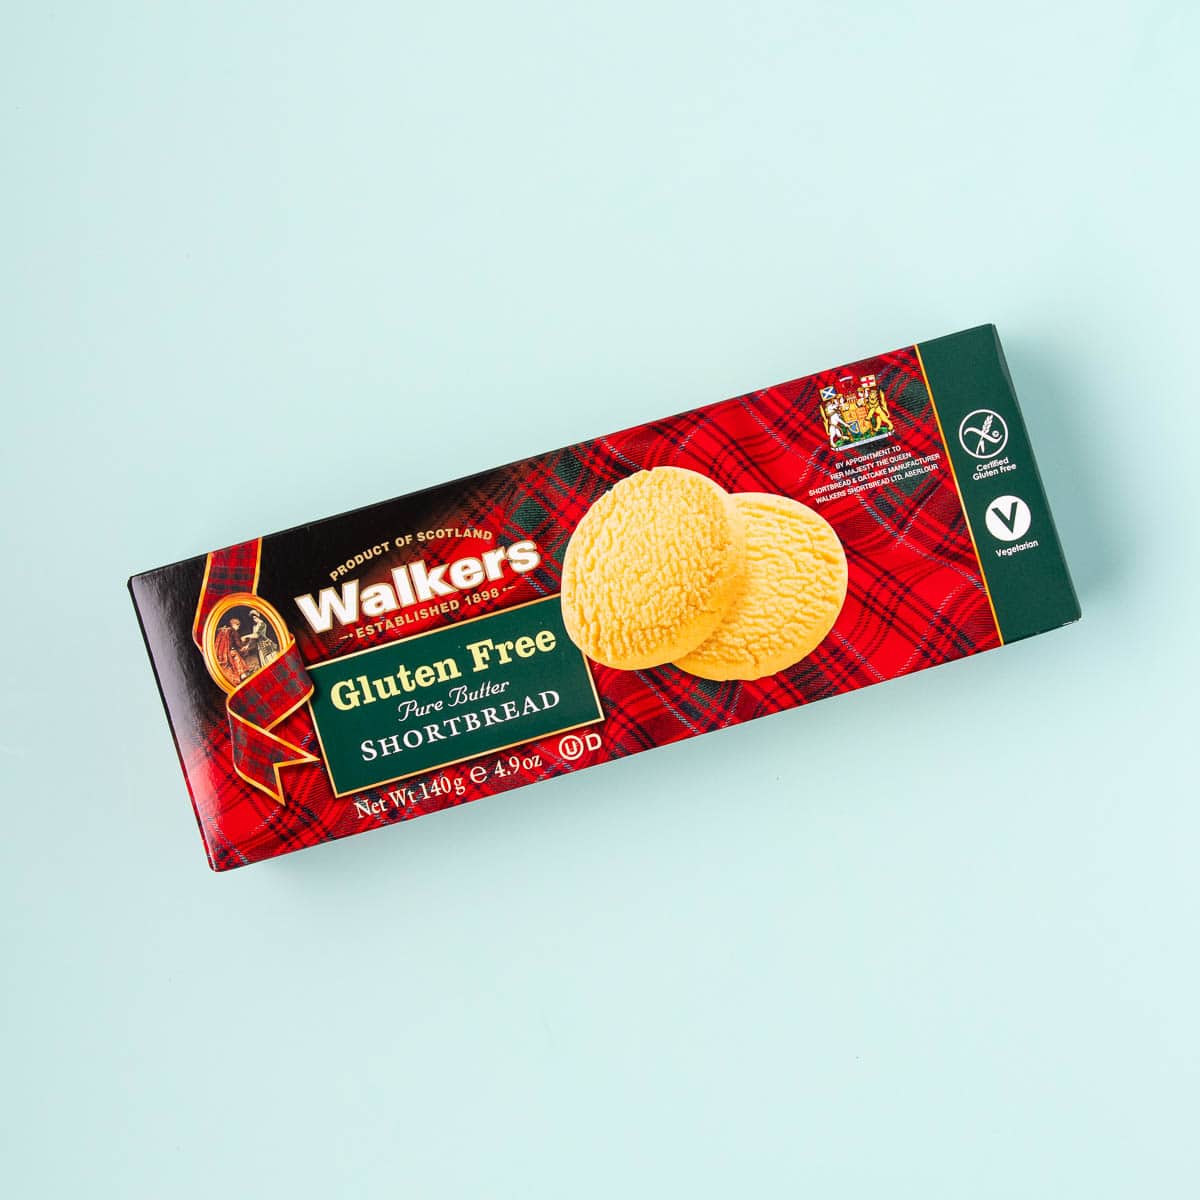 A red tartan-patterned box of Walker's gluten free shortbread on a mint green background.